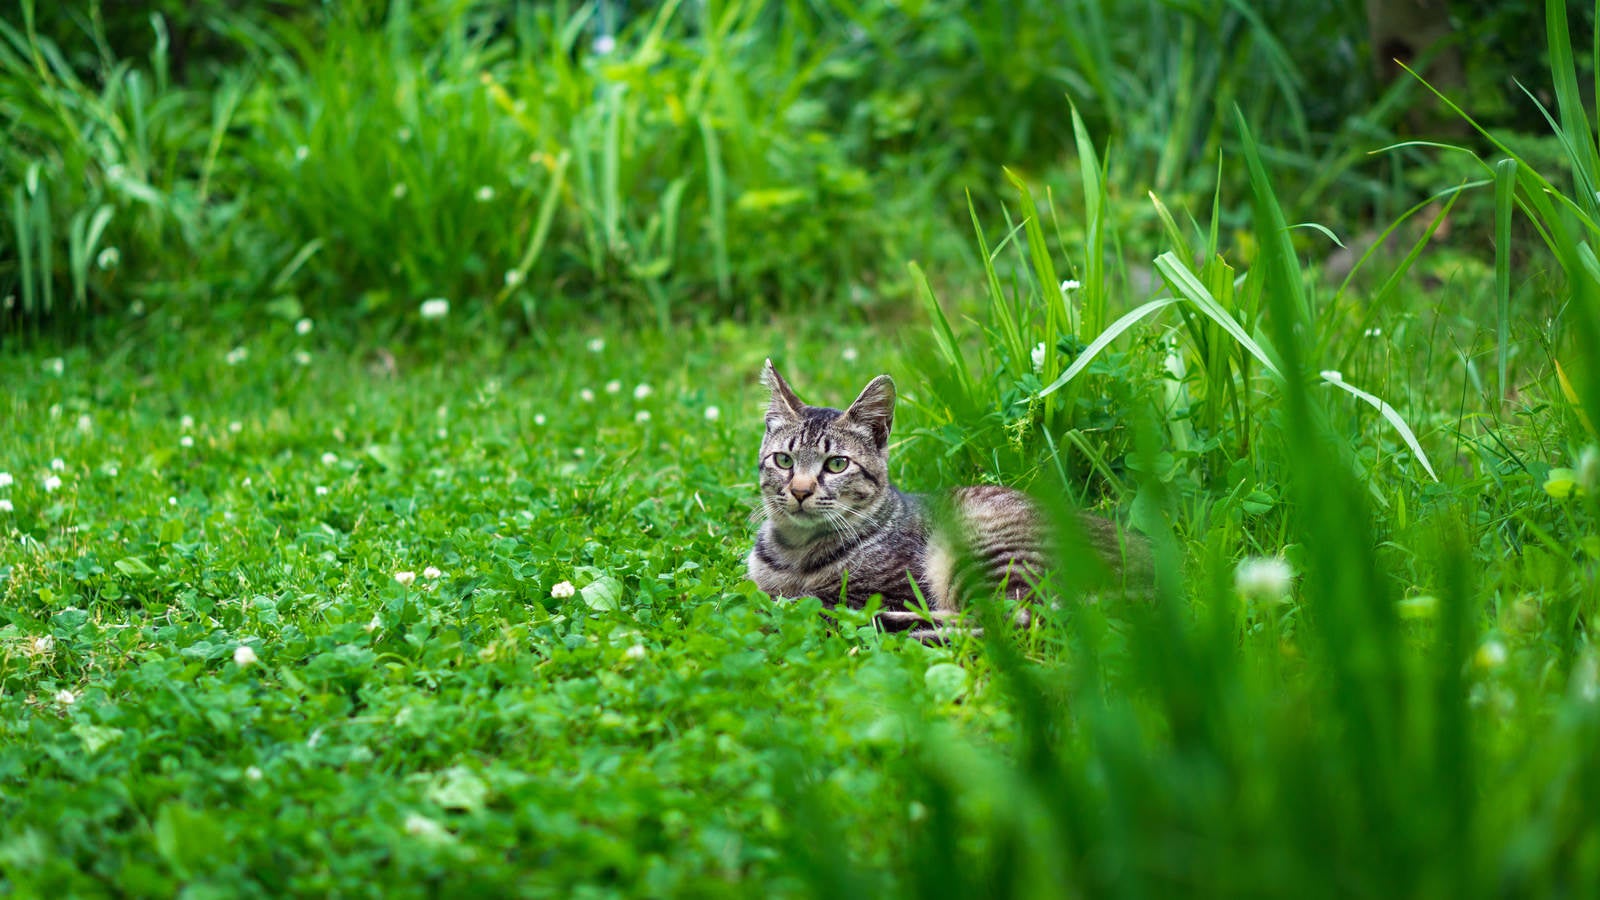 「草むらで日向ぼっこするネコ氏」の写真